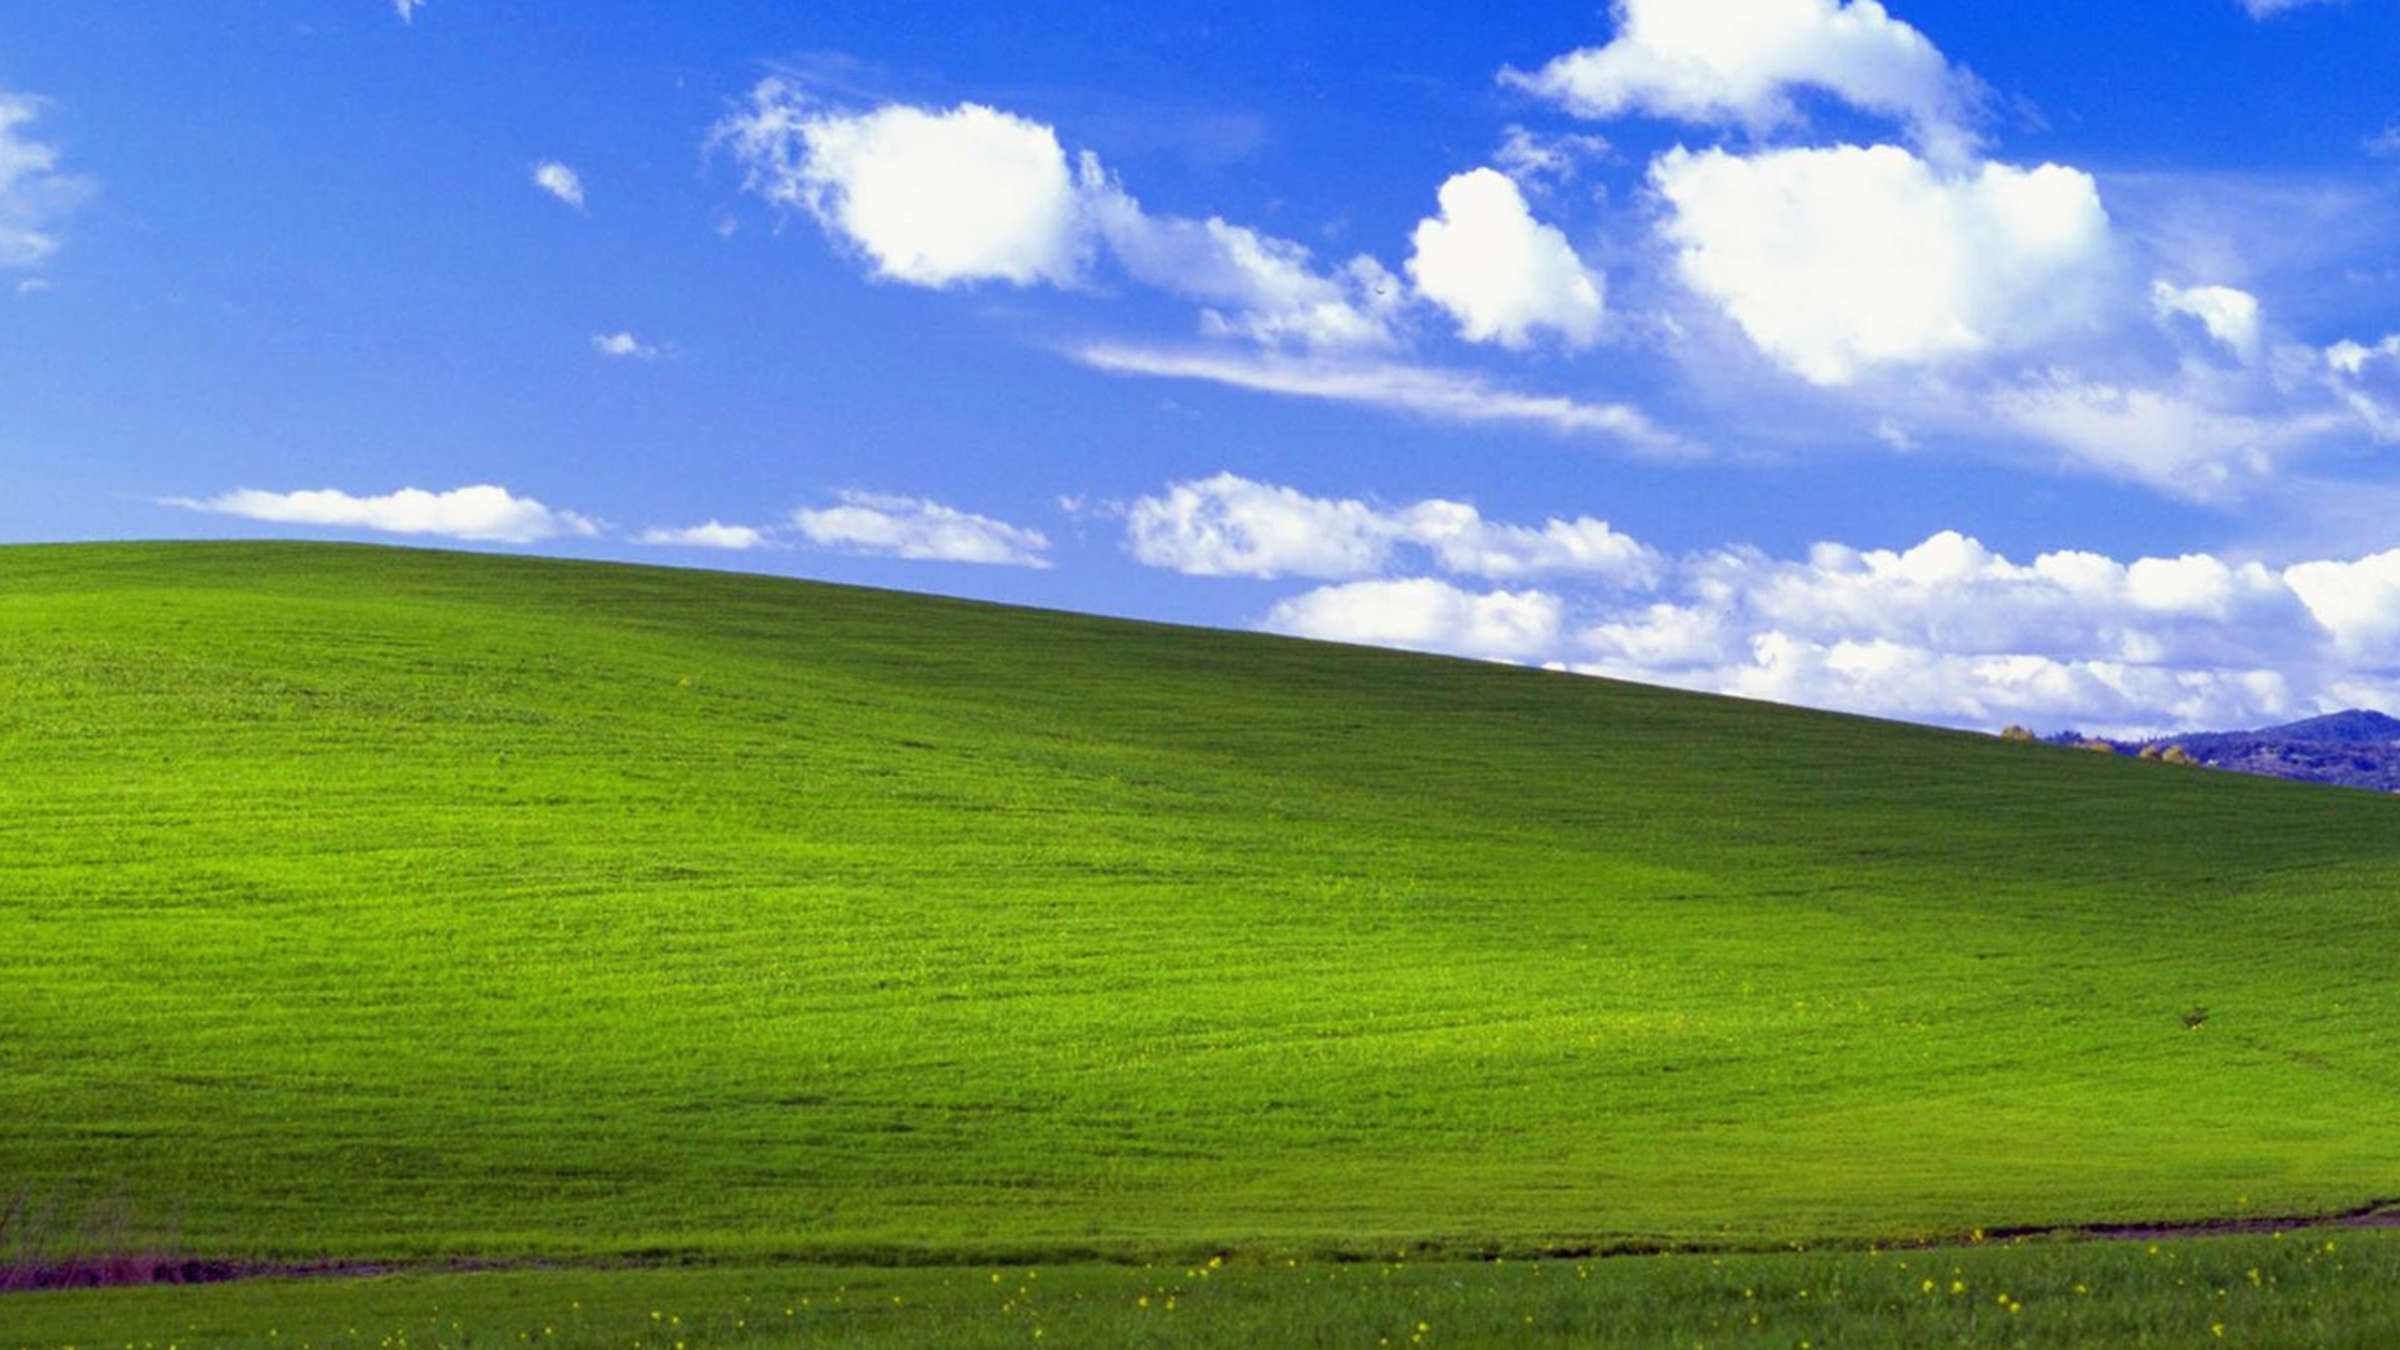  Microsoft Hintergrundbild 2400x1350. Die Geschichte Hinter Dem Berühmten Windows Hintergrundbild Von Charles O'Rear